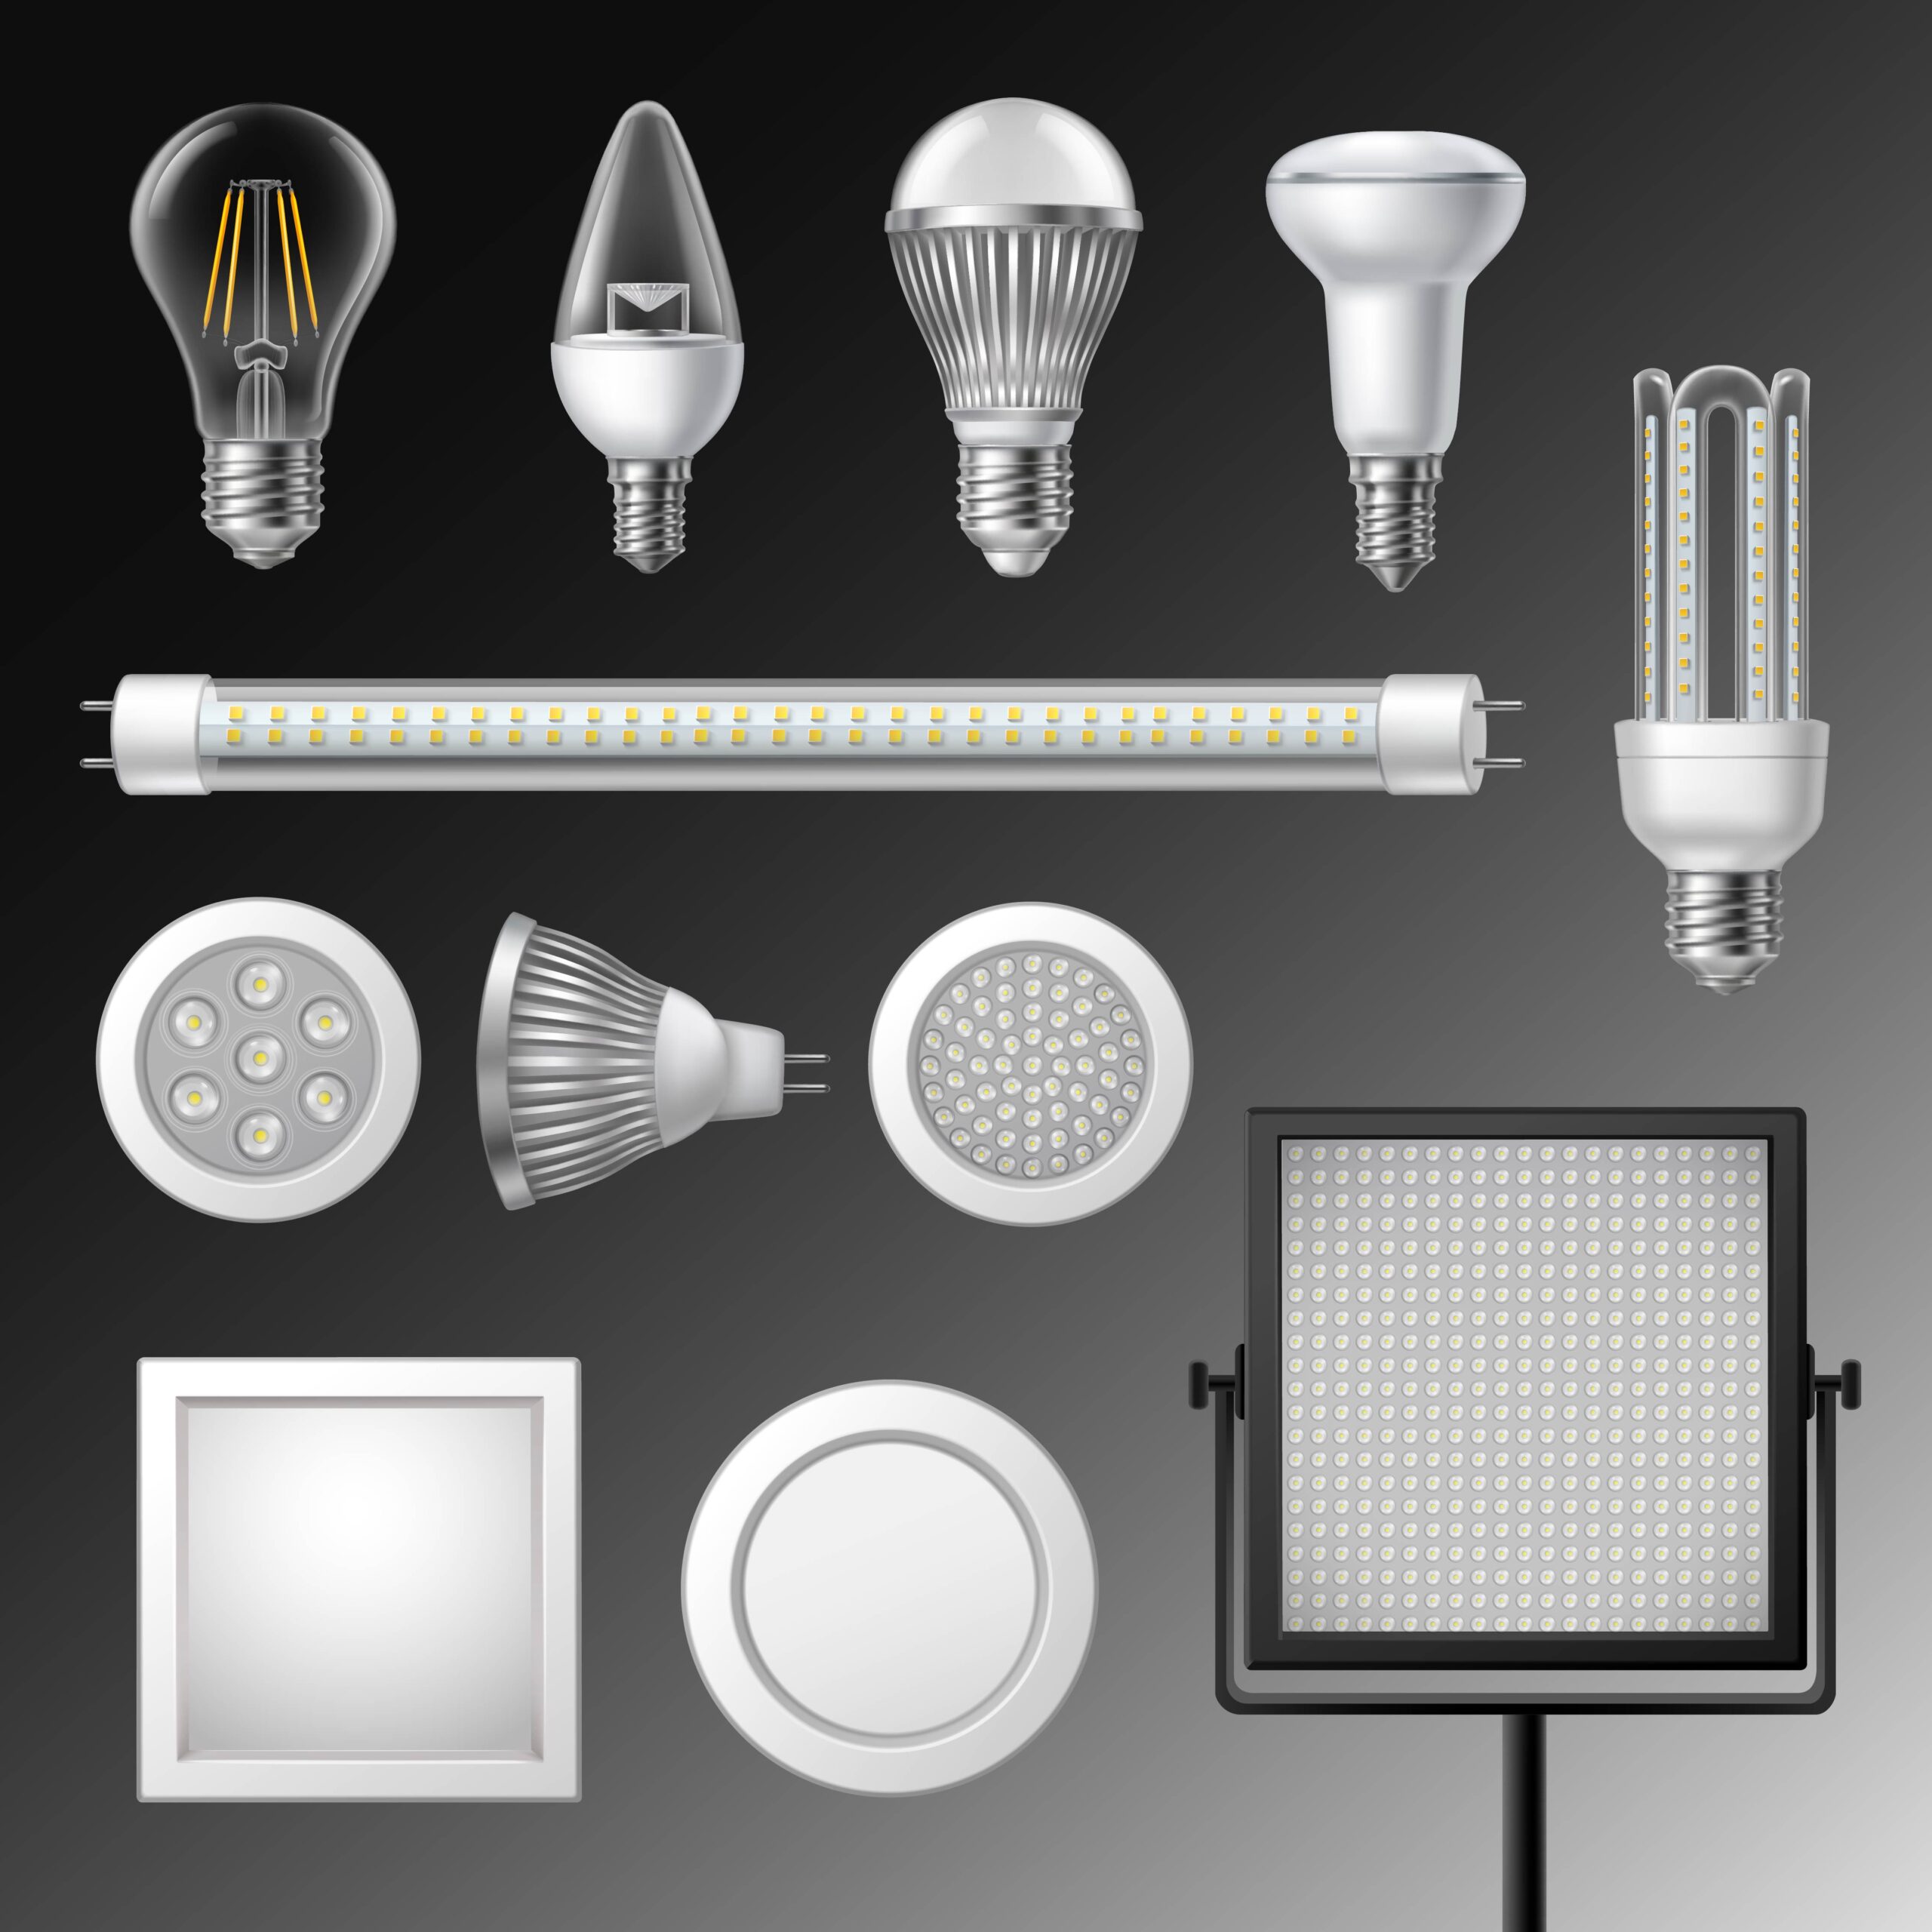 LED Light Manufacturers In Delhi